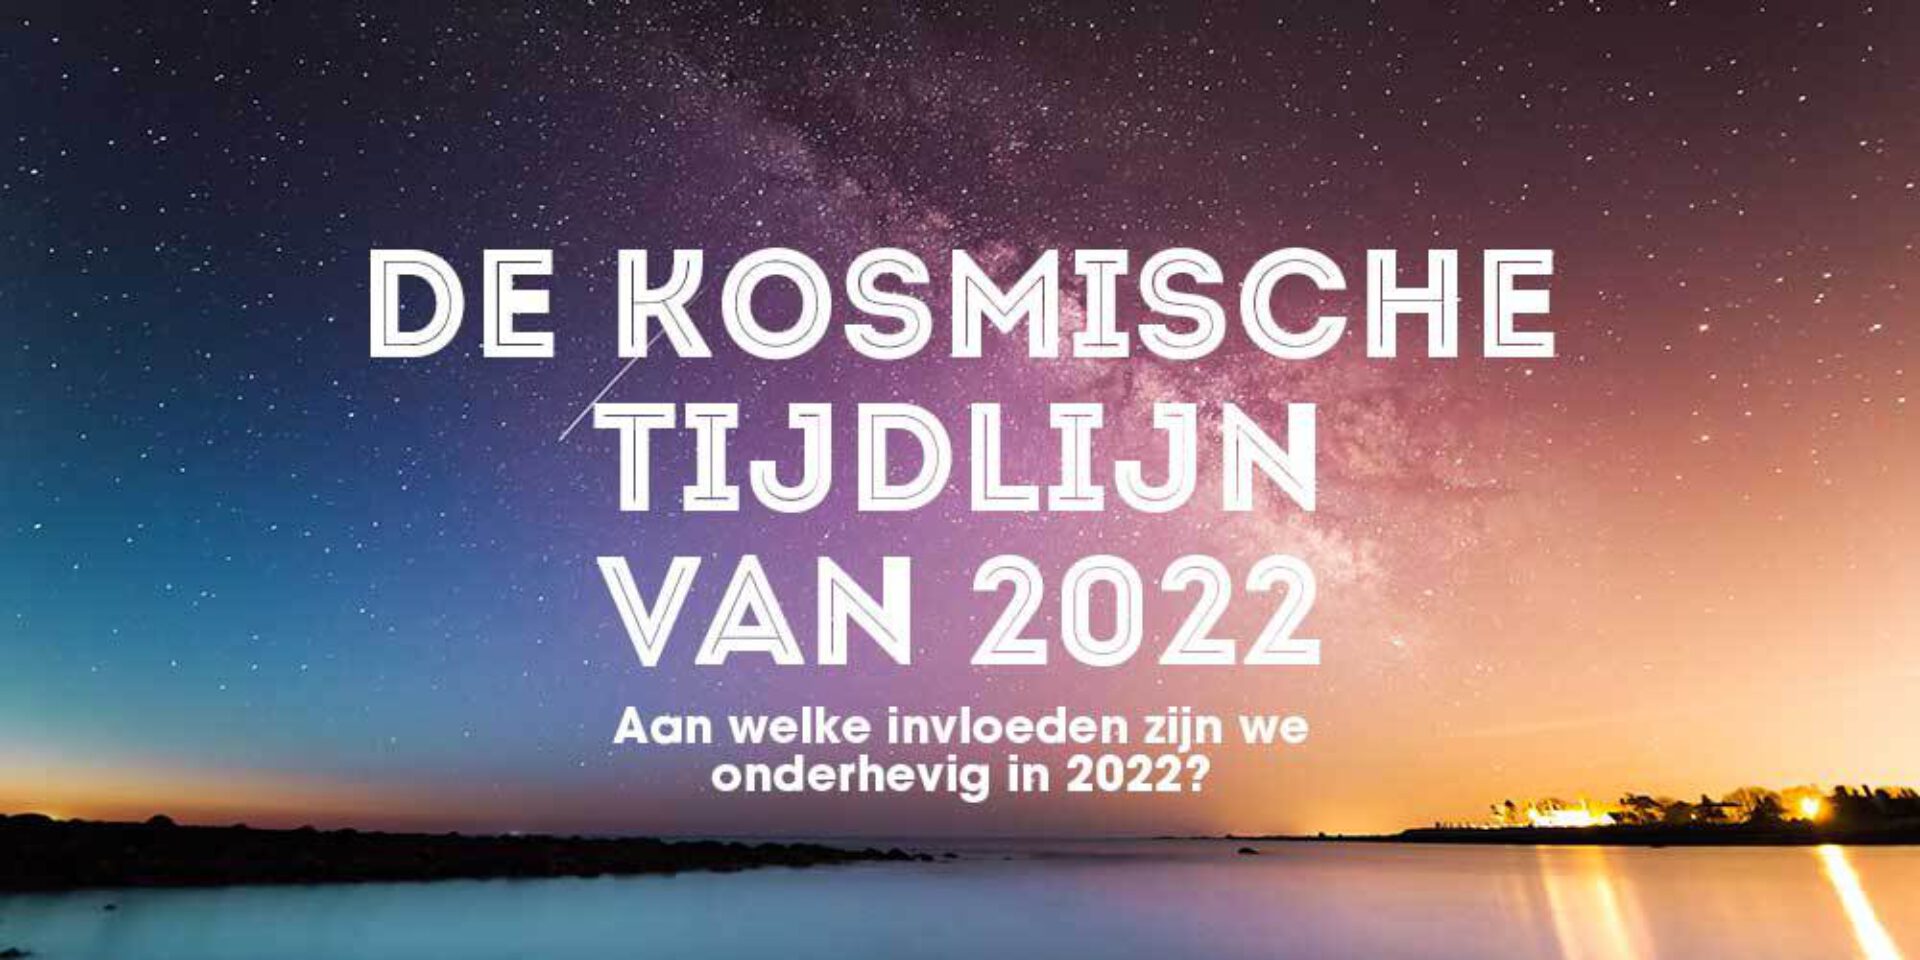 De kosmische tijdlijn van 2022: aan welke invloeden zijn we onderhevig?